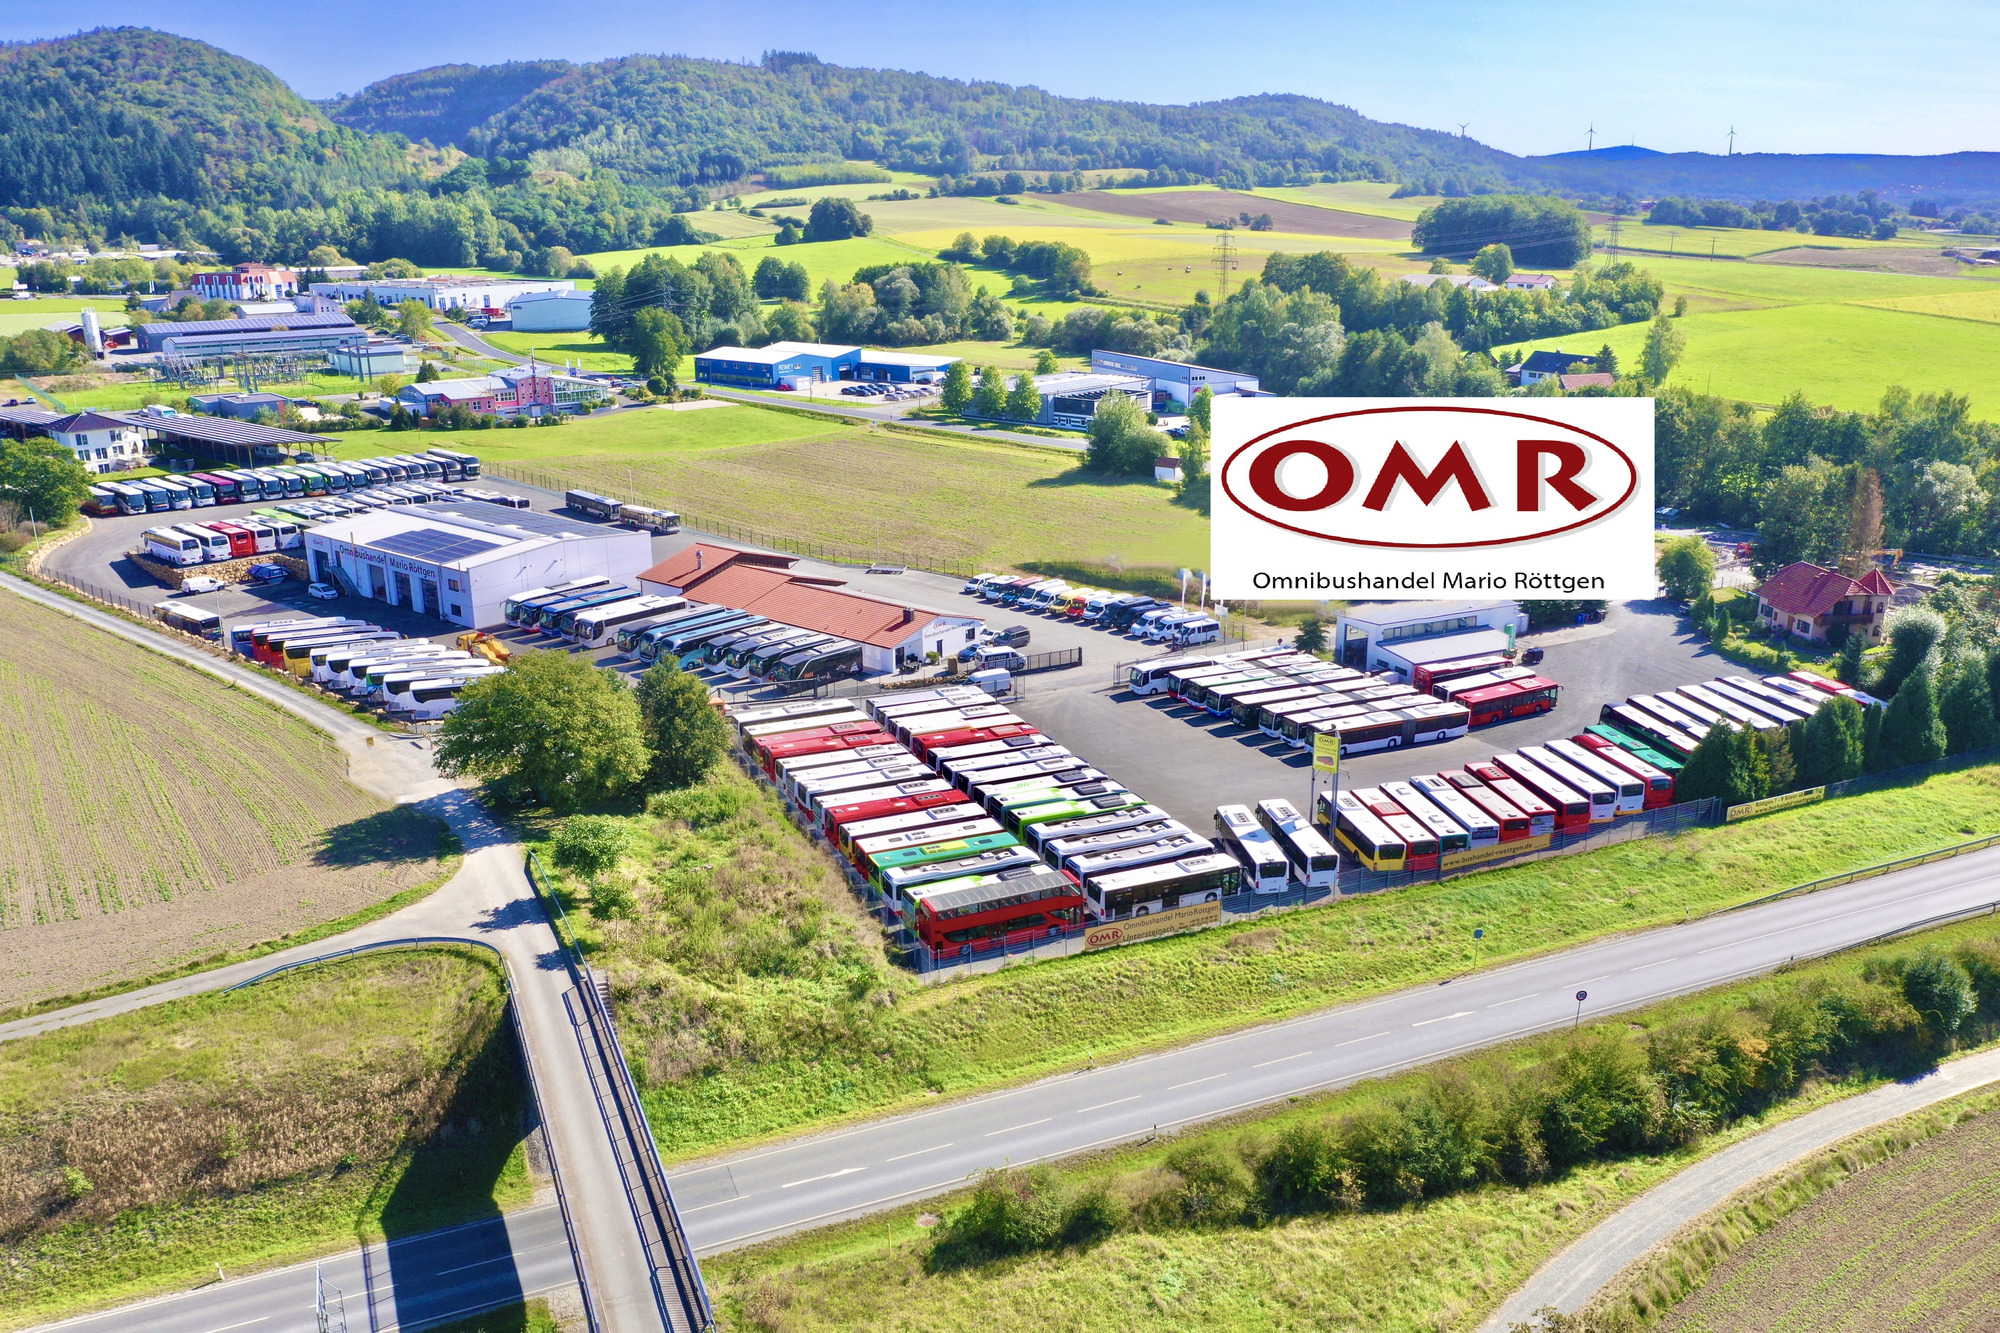 OMR Omnibushandel Mario Röttgen GmbH - Építőipari gépek undefined: 1 kép.